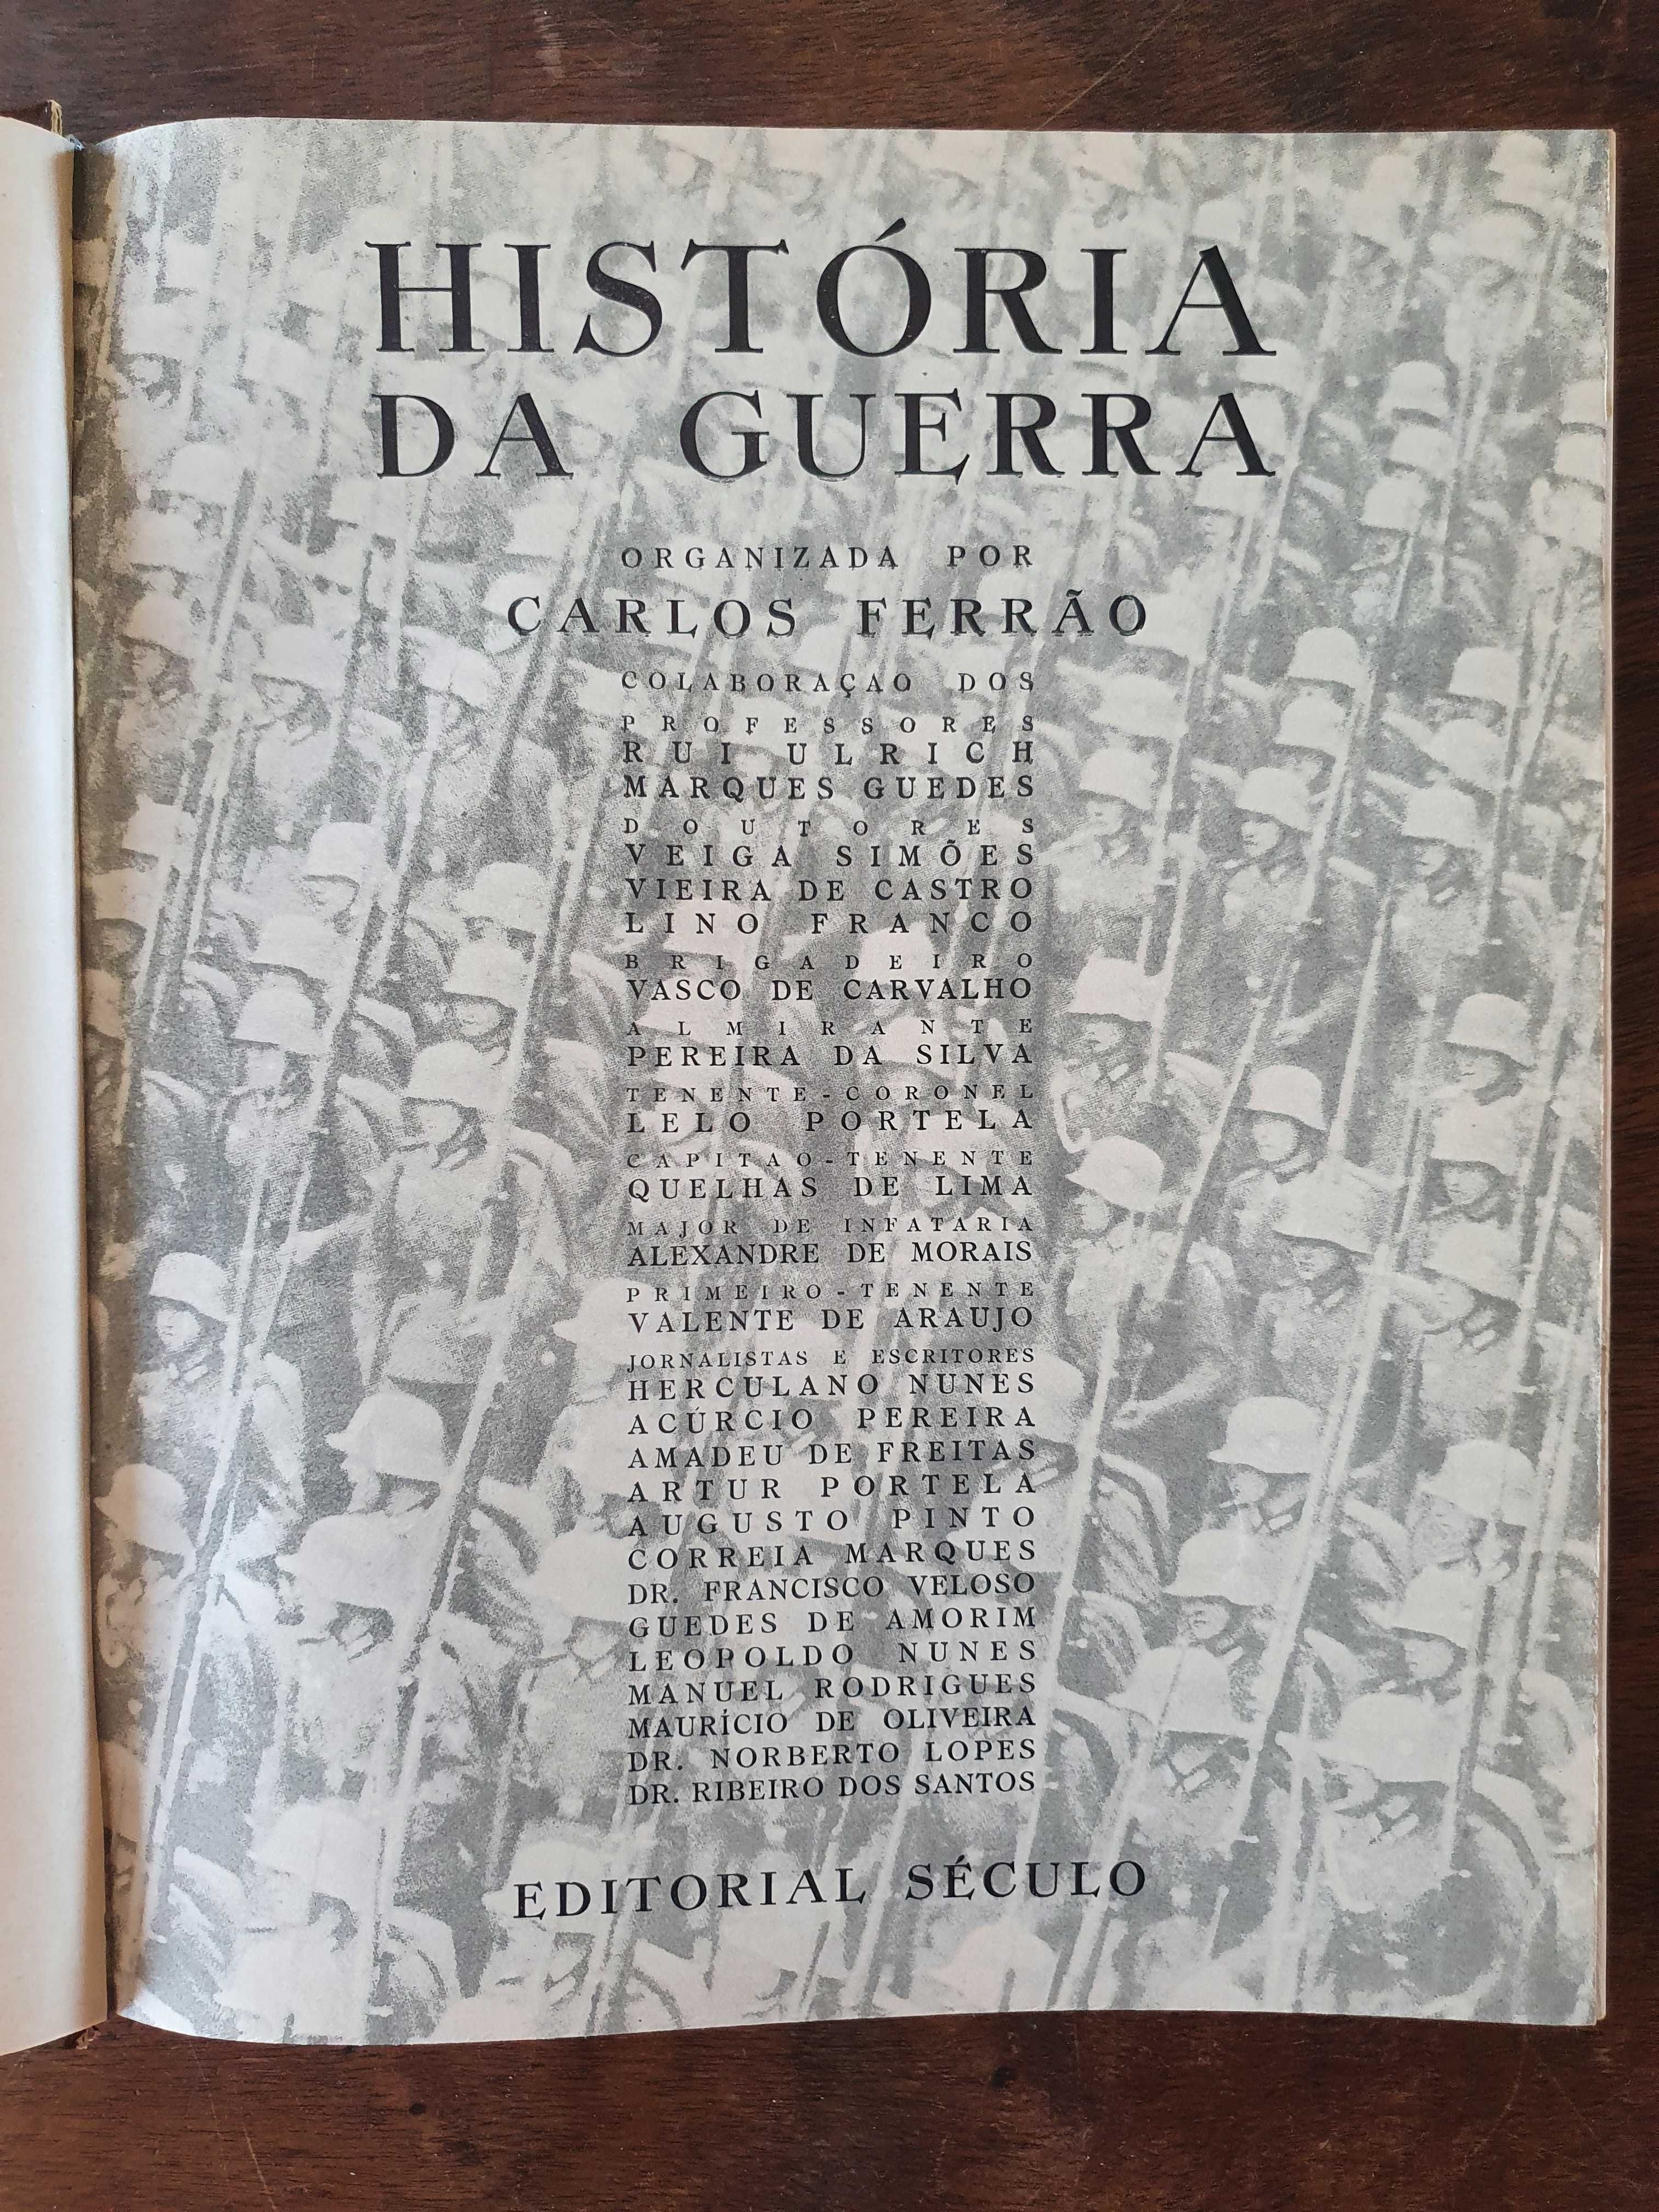 História da Guerra, 2 volumes, por Carlos Ferrão, Editorial Século